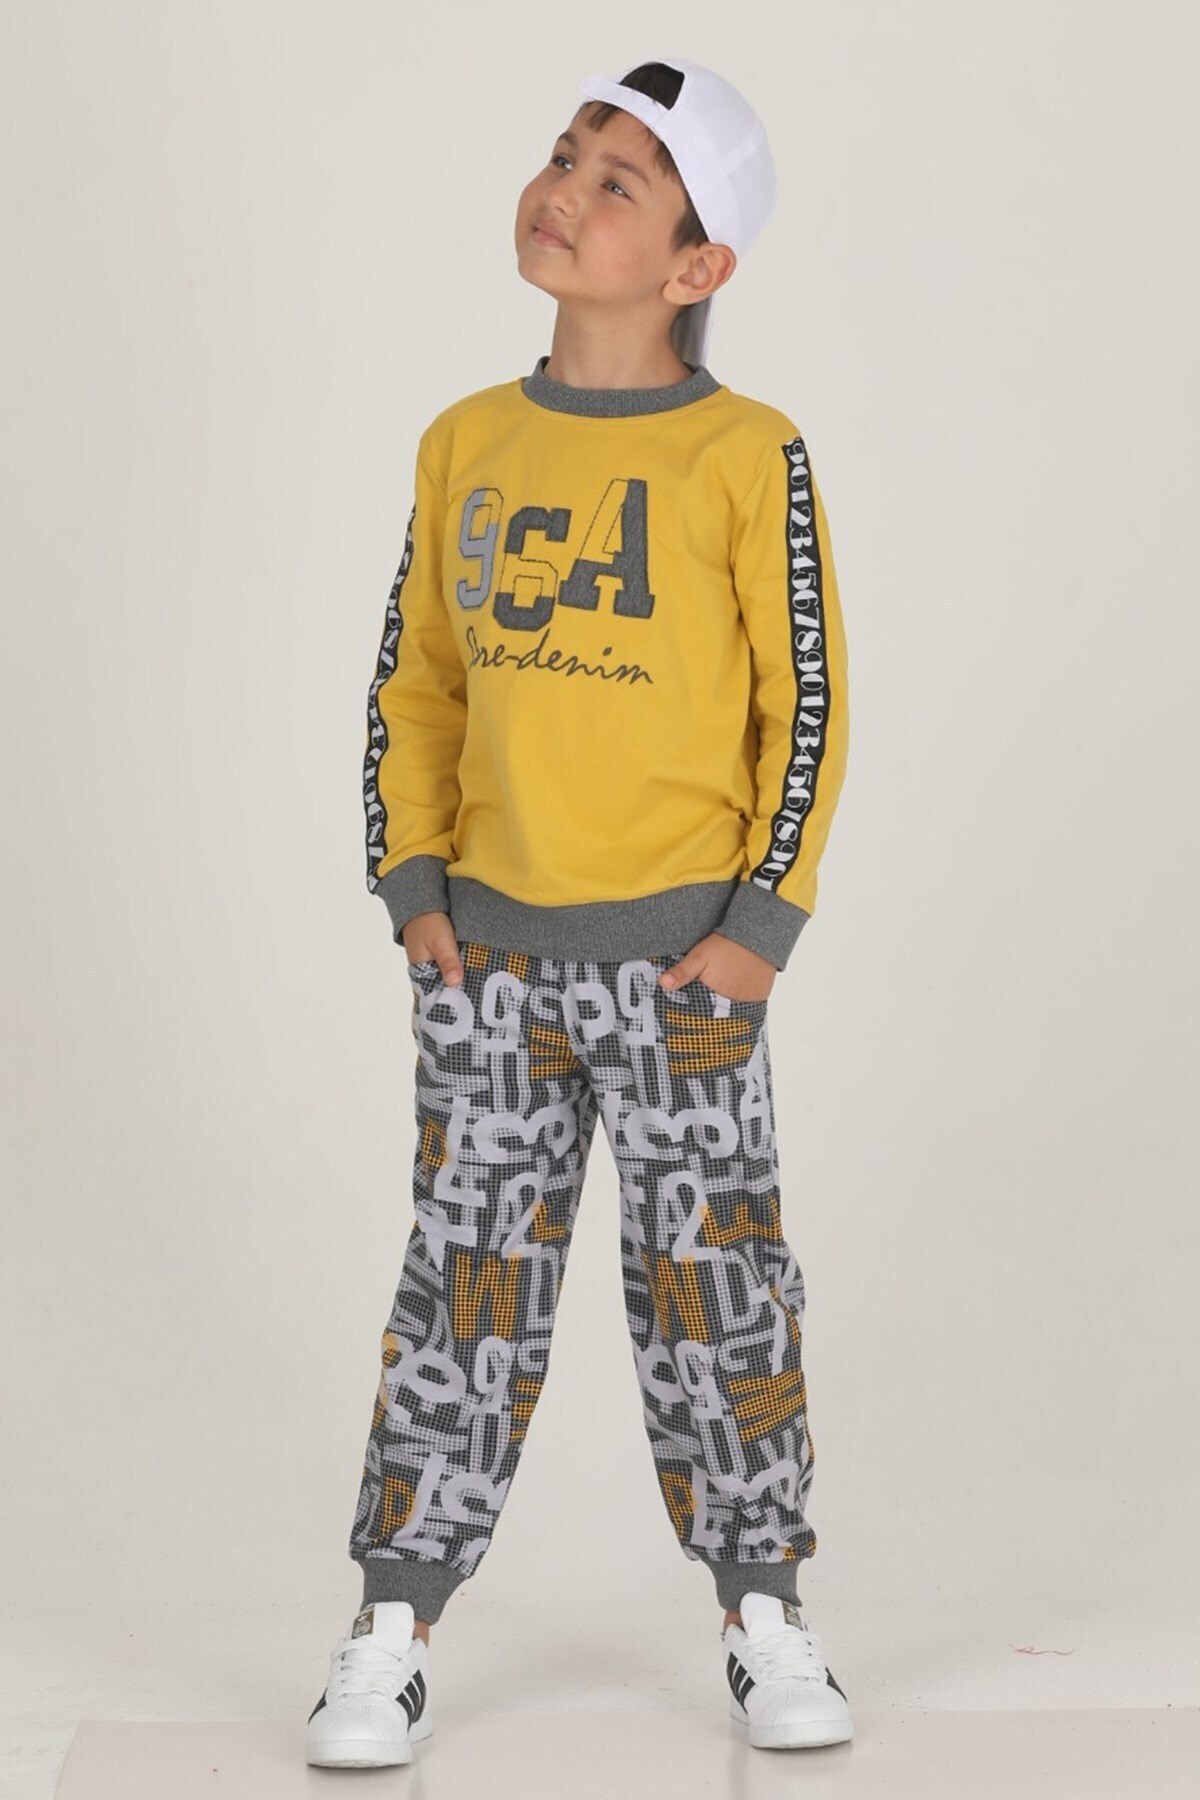 Sarı Renkli Pamuklu İki İplik Hayal Sepeti TKNR 47318 Erkek Çocuk Pijama Takımı 4-5 yaş